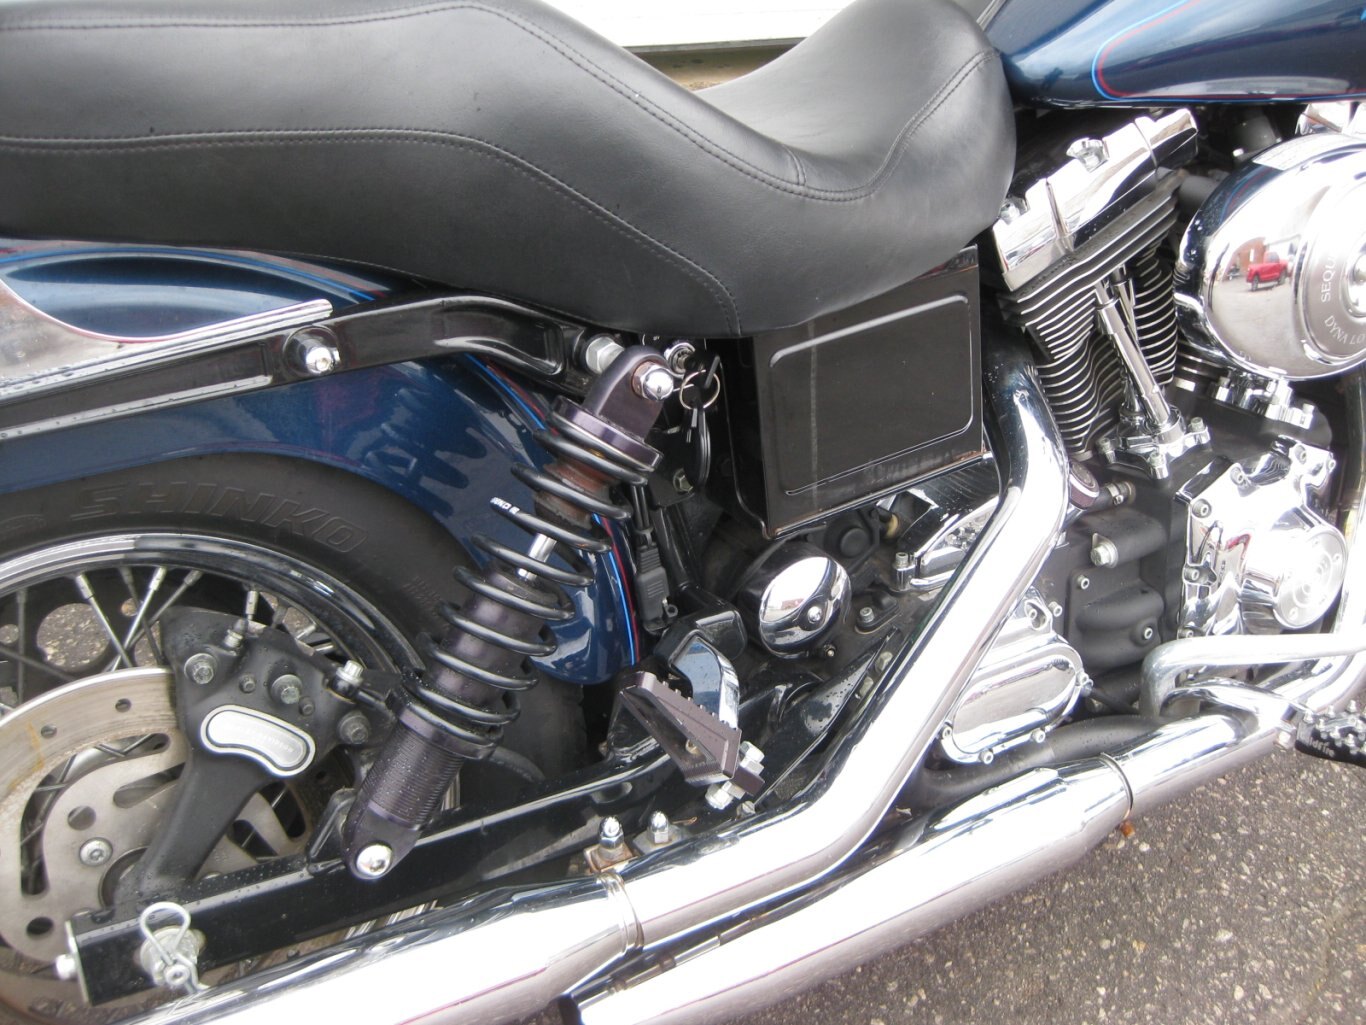 2004 Harley Davidson FXDL I Low Rider